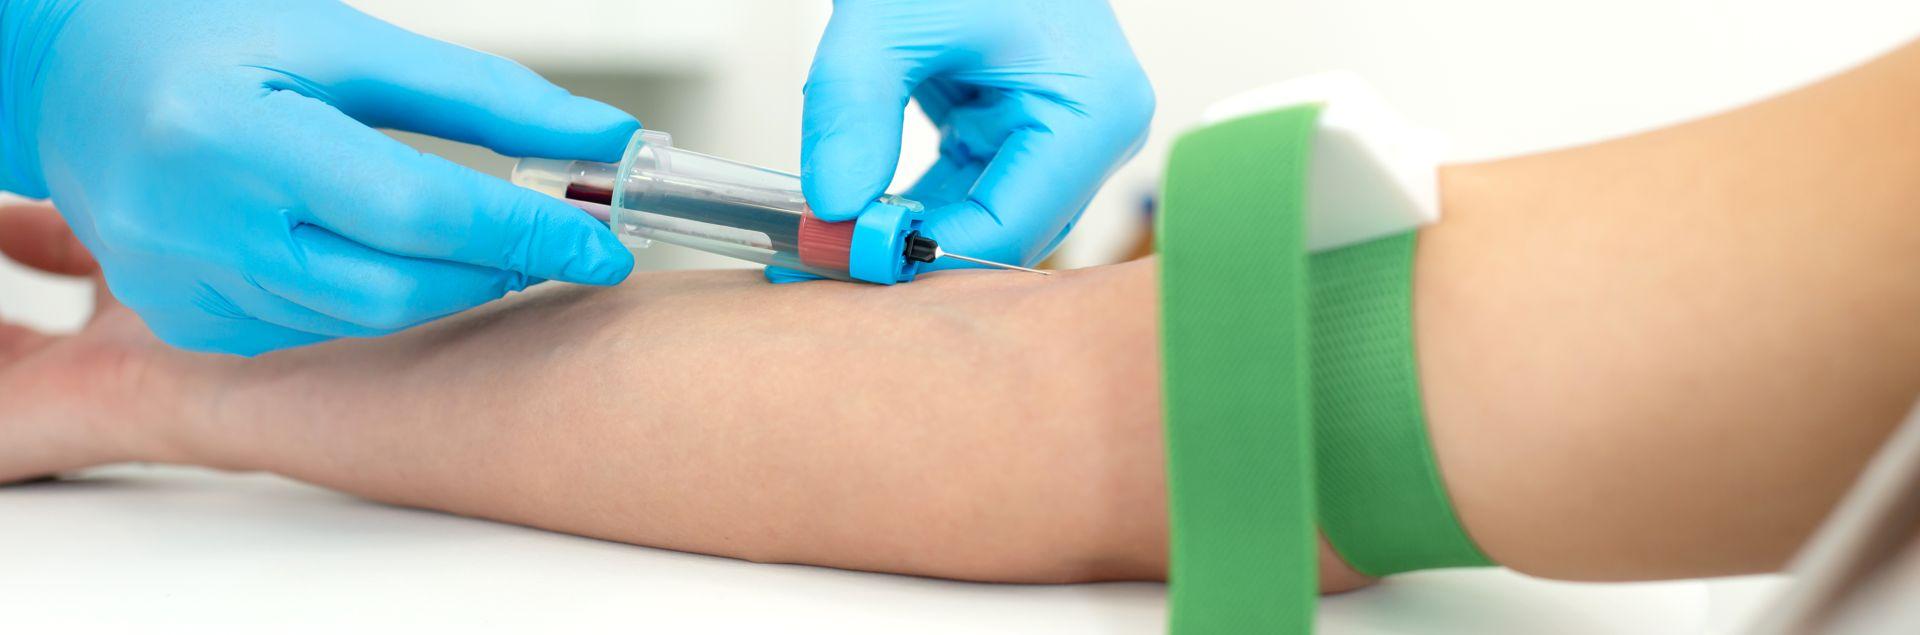 Uma coleta de exame de sangue com um acesso a vácuo